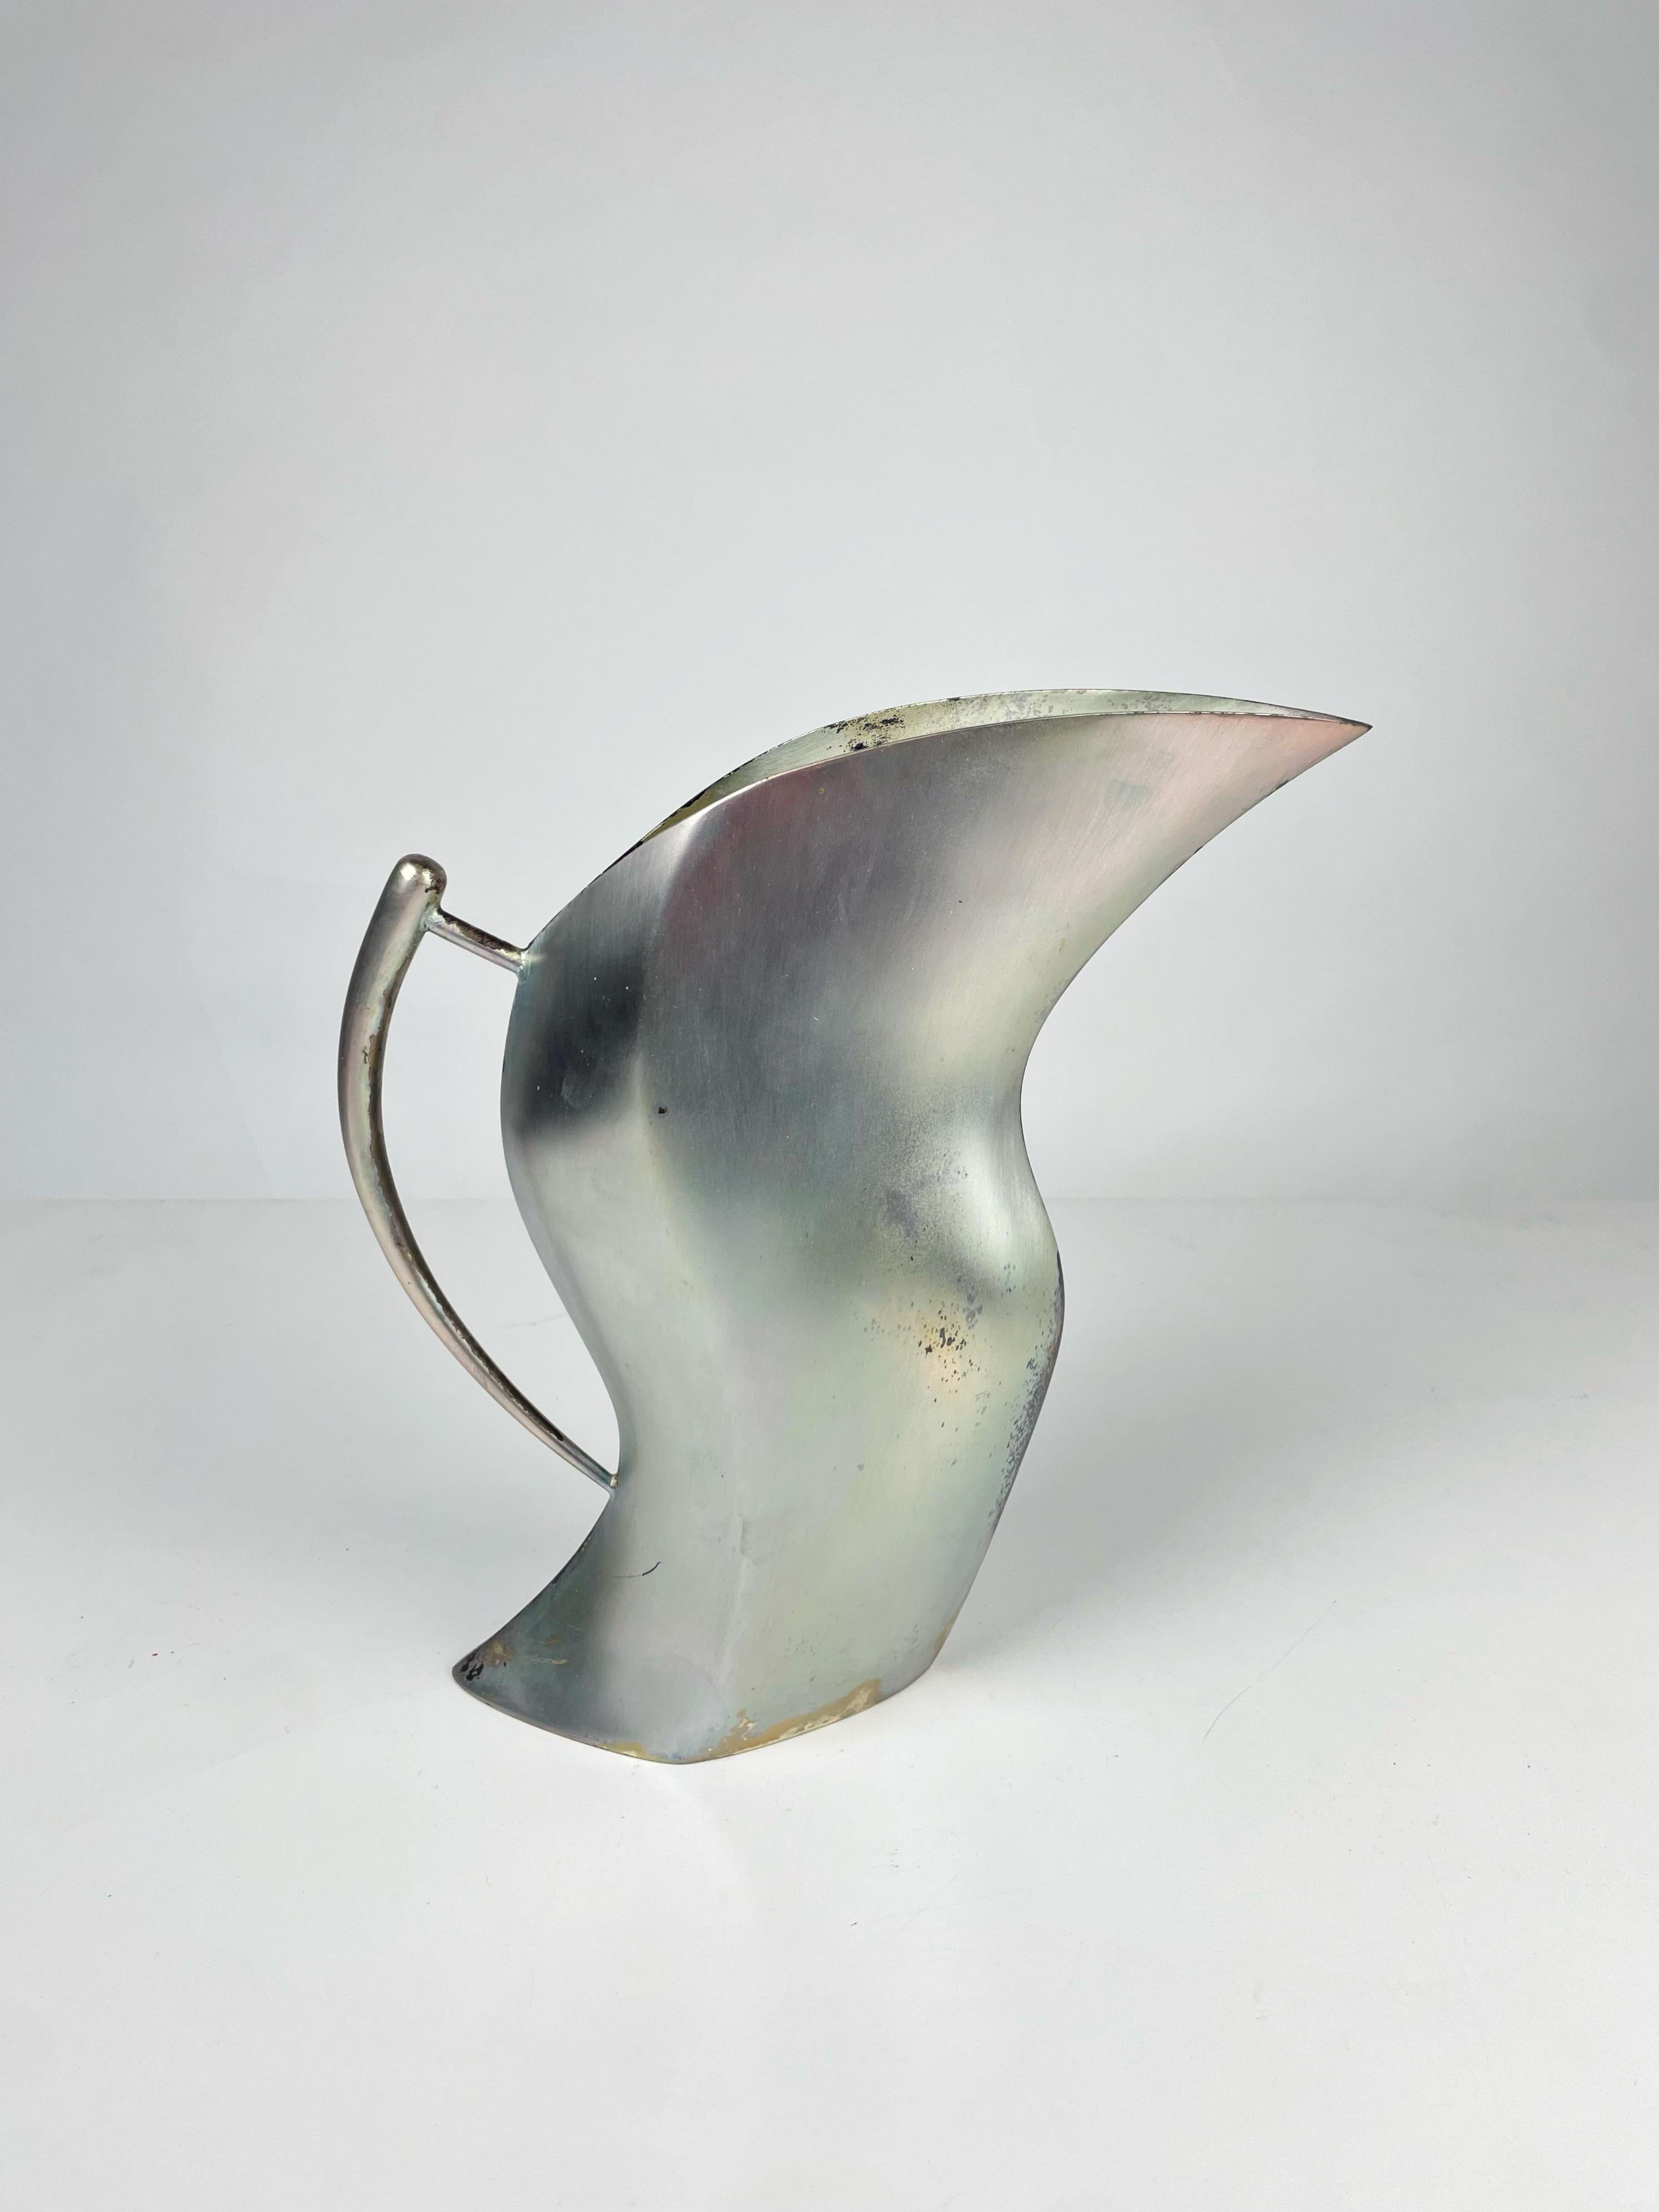 Set bestehend aus einer Vase, einer Karaffe Modell „Simulata“ und einer Karaffe Modell „Instabilia“ entworfen von Massimo Iosa Ghini für die Design Gallery Milano um 1989, hergestellt von Argenteria Merano in Italien aus versilbertem Alpaka. Modelle